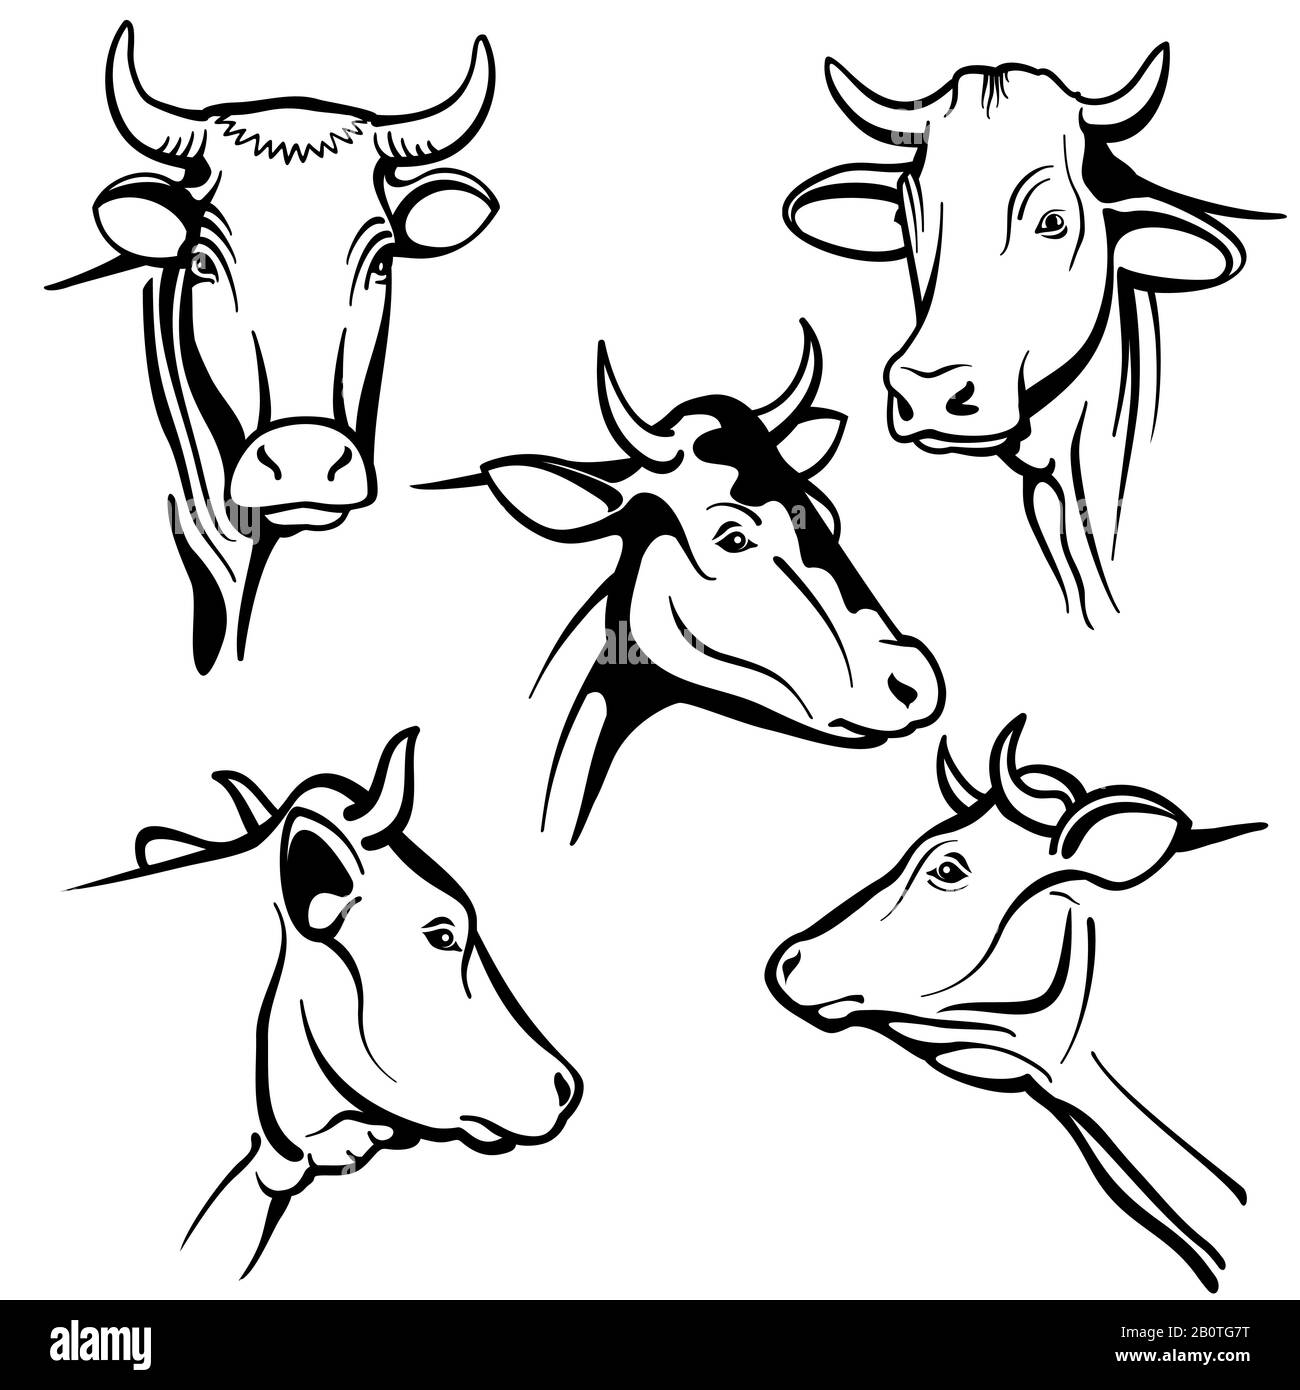 Isolierte Portraits für Kuhkopfvektoren, Rindergesichter für die Verpackung von natürlichen Milchprodukten auf dem Bauernhof. Kuh-Tier-Kopf, Abbildung der schwarzen Rinderkuh Stock Vektor